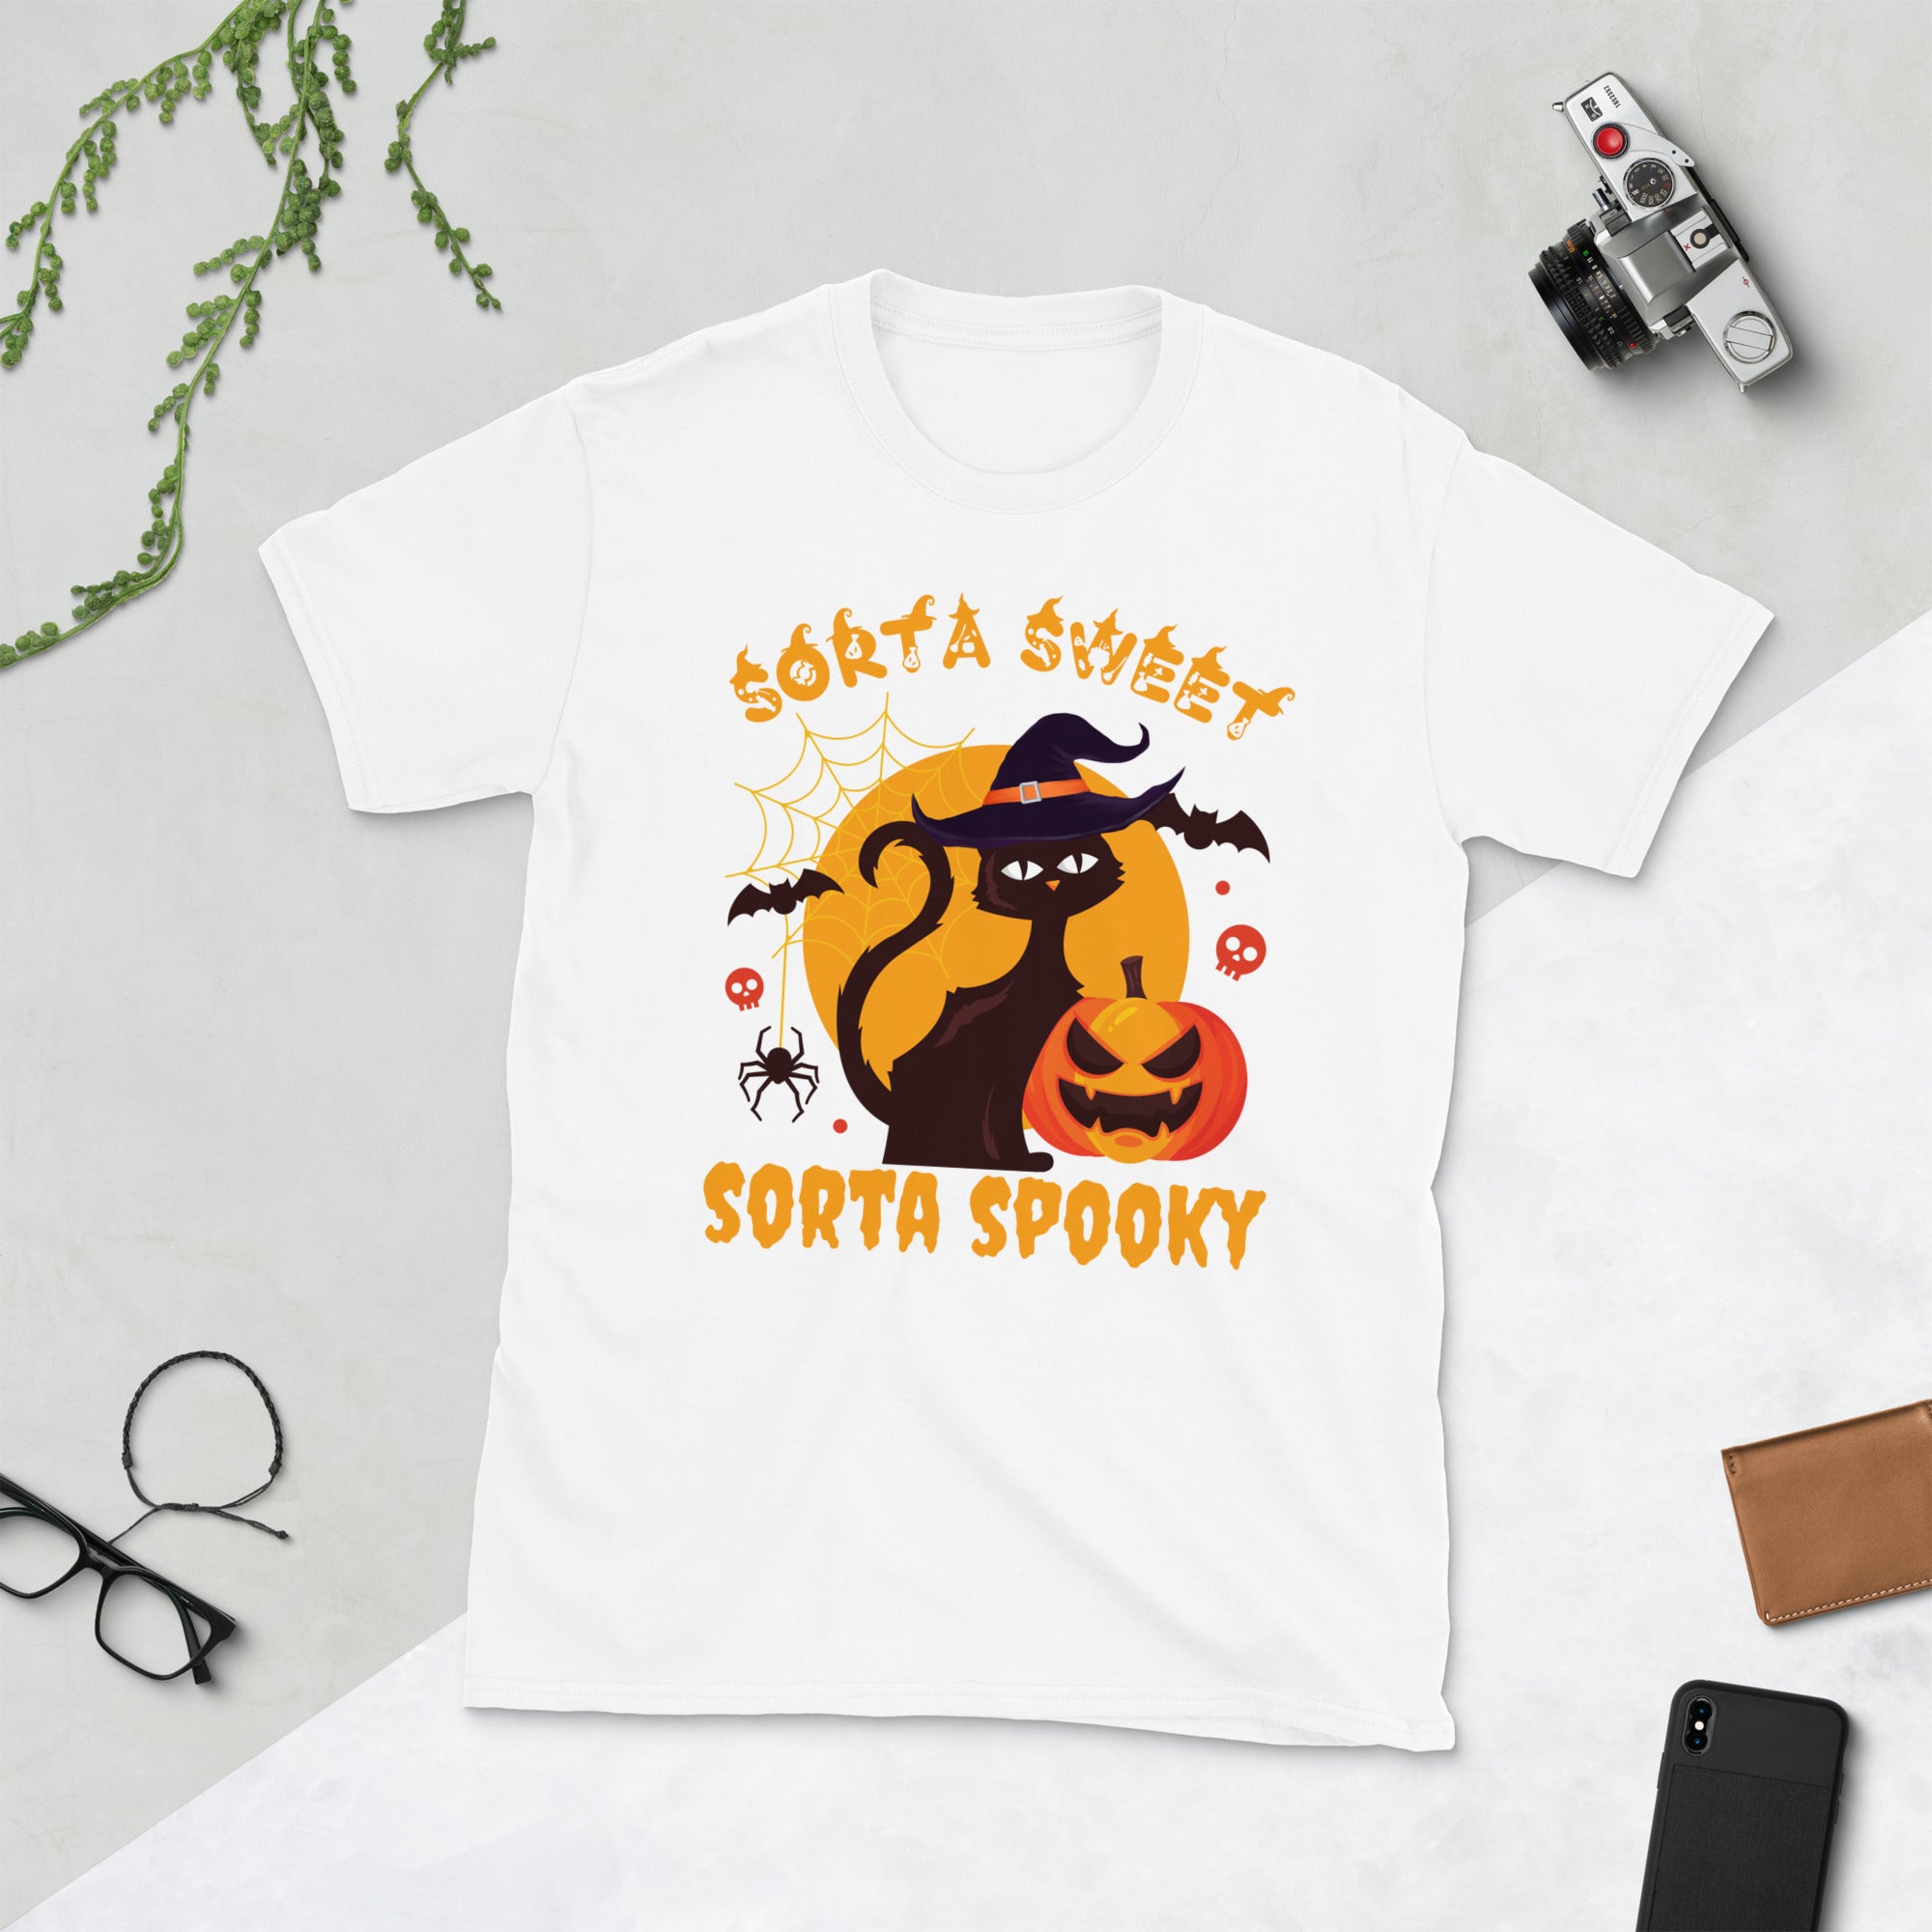 Sorta Sweet Sorta Spooky, divertida camisa de disfraz de Halloween de gato brujo, camisa de gato de calabaza, camisa de temporada espeluznante, regalos divertidos para amantes de los gatos de Halloween